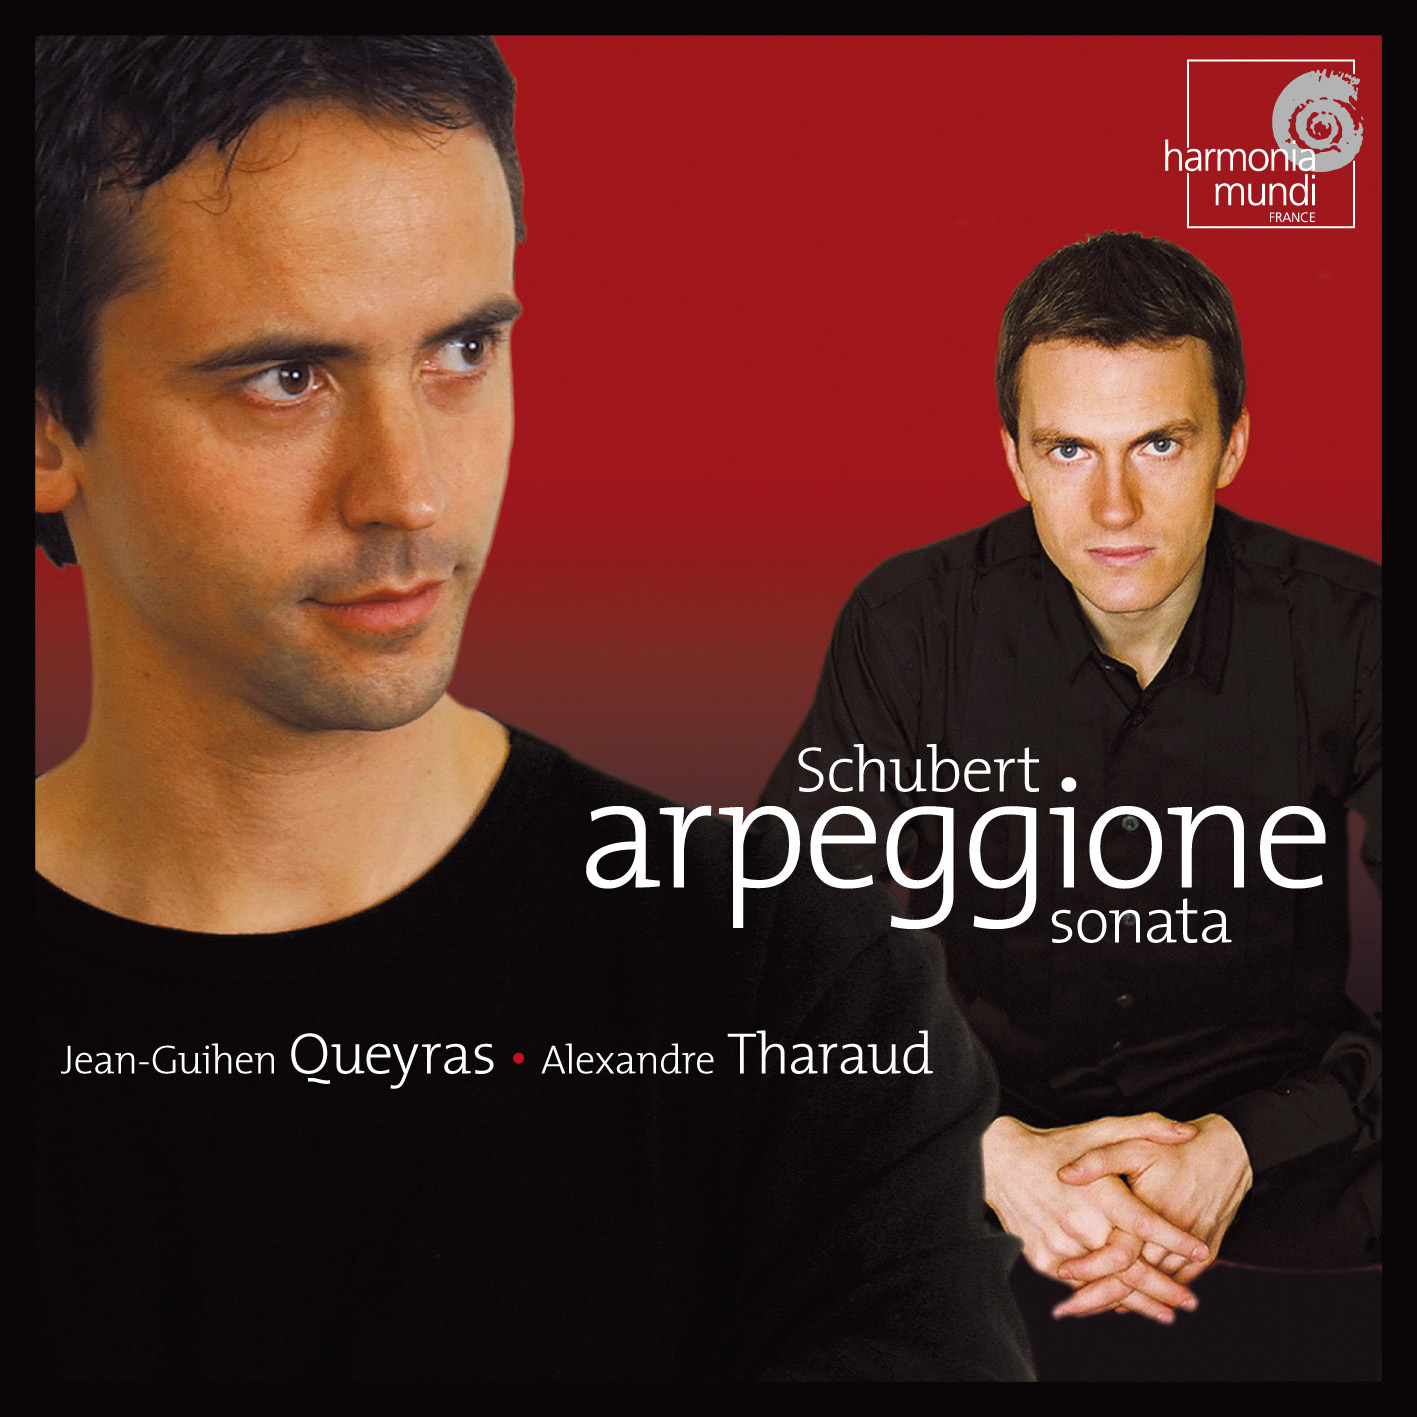 Schubert: Sonate pour violoncelle et piano "Arpeggione" D. 821